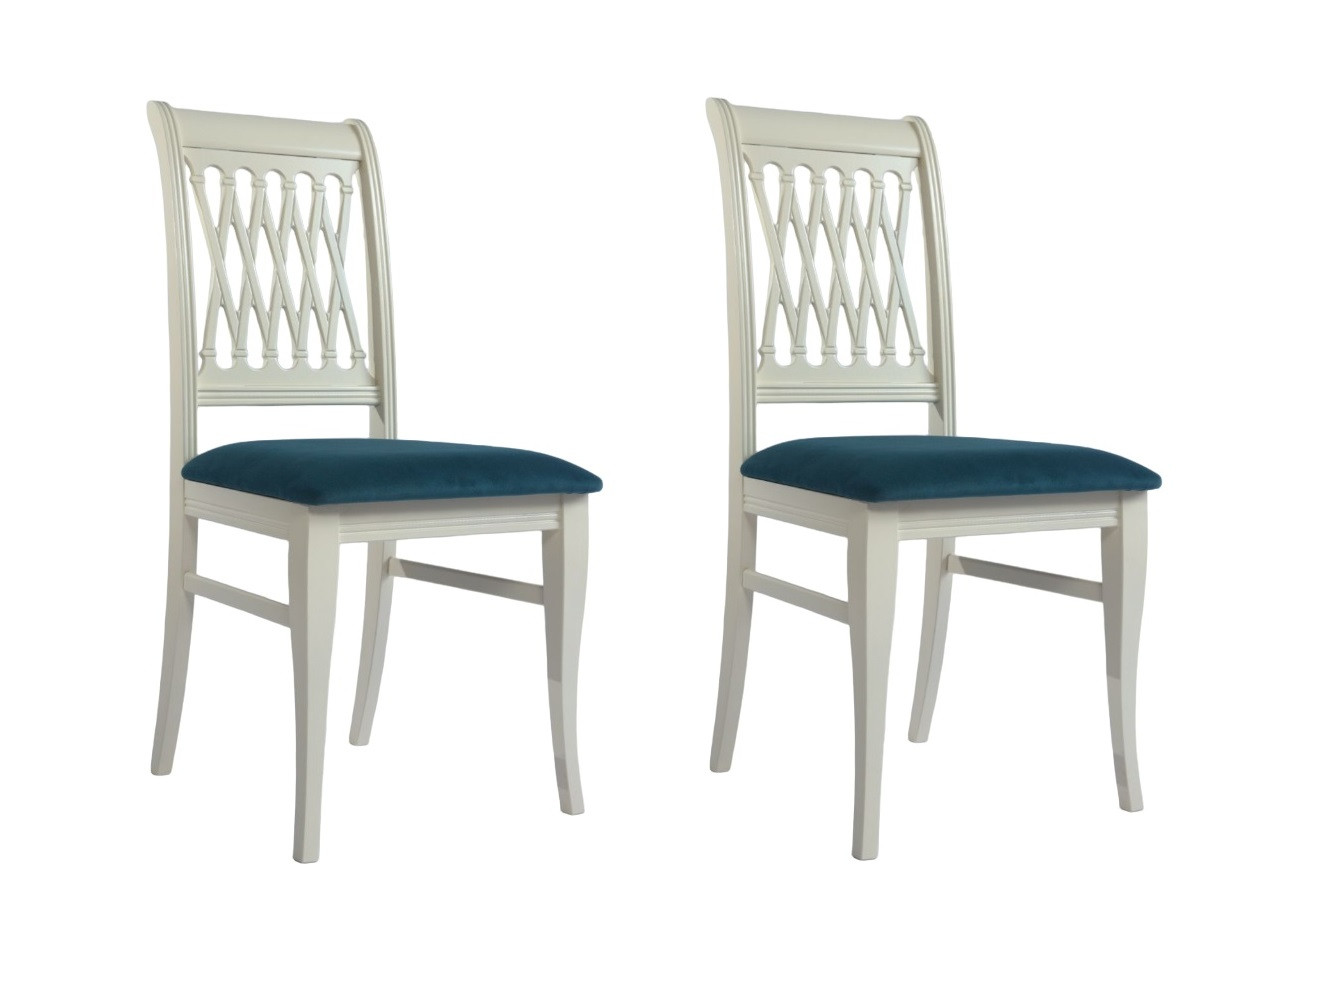 Комплект стульев Ричмонд 2 шт. слоновая кость/зеленый Зеленый, Массив комплект стульев для кухни 2 шт джулиан серый с подлокотниками